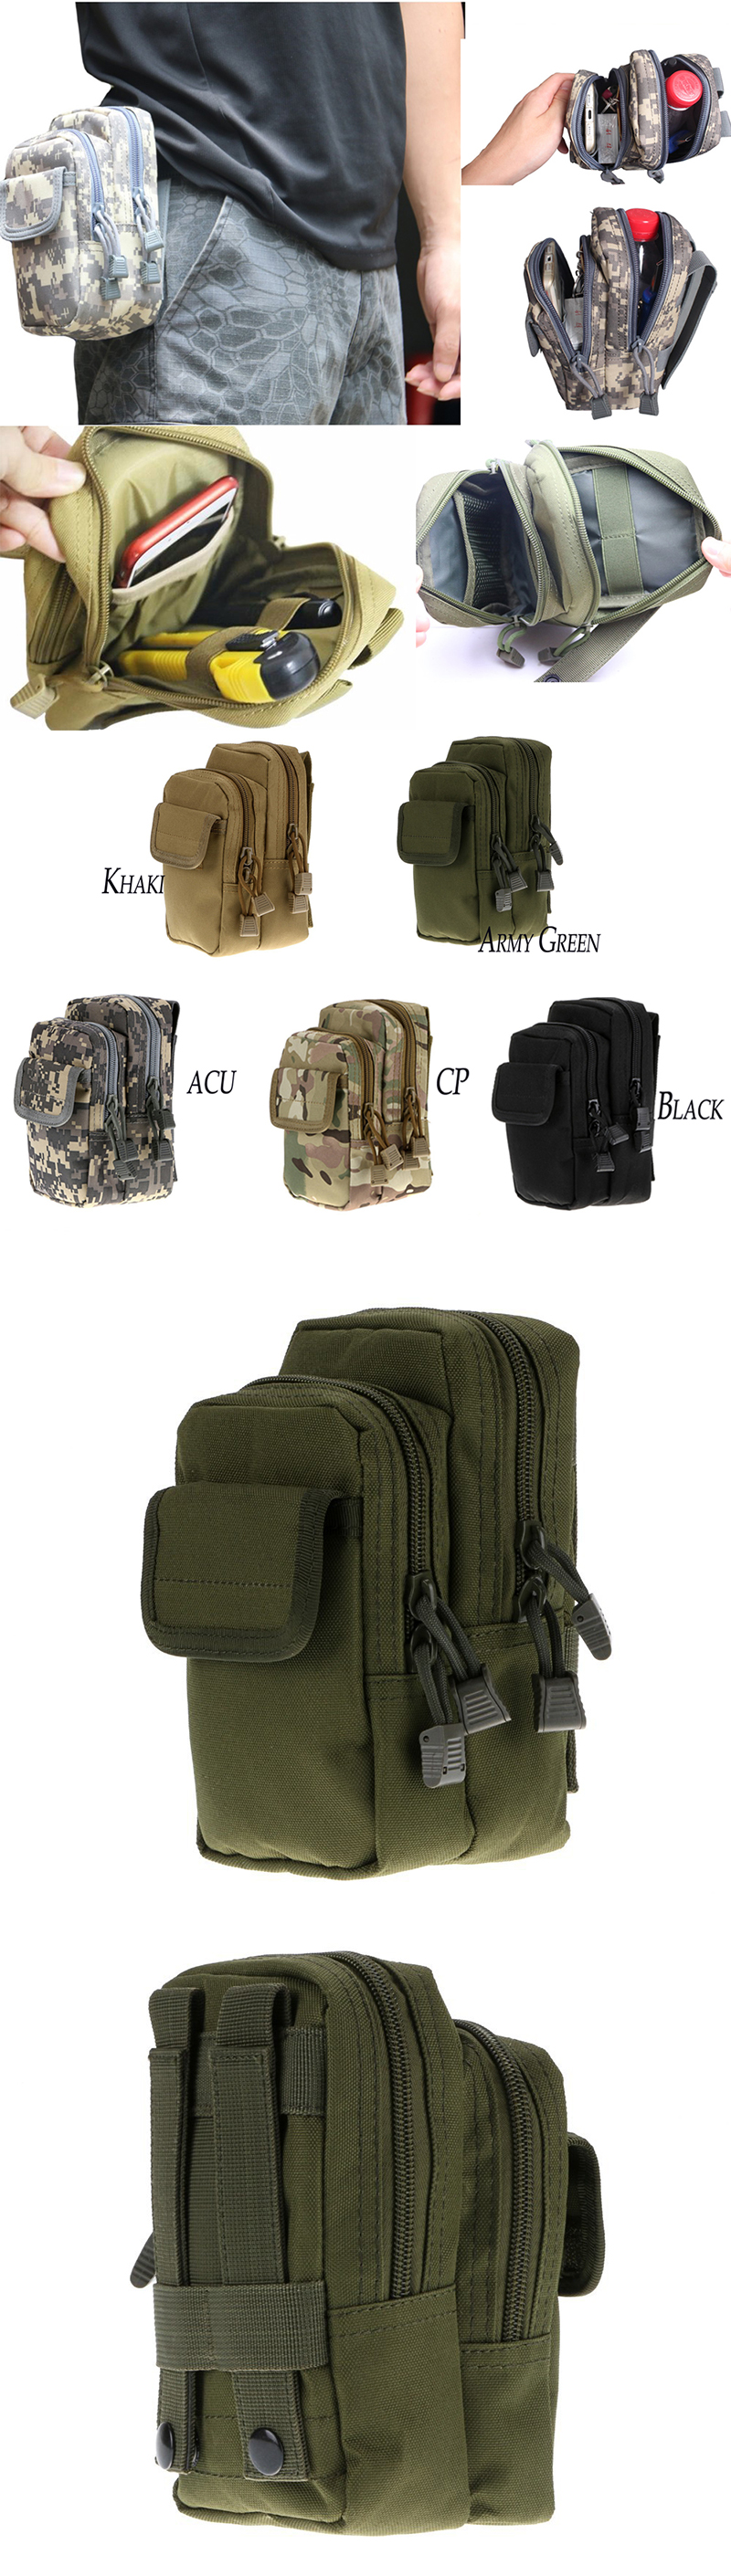 Molle-PALS-Waist-Pack-Belt-Waist-Bag-Fishing-Tools-Waist-Bag-Pack-1073333-1